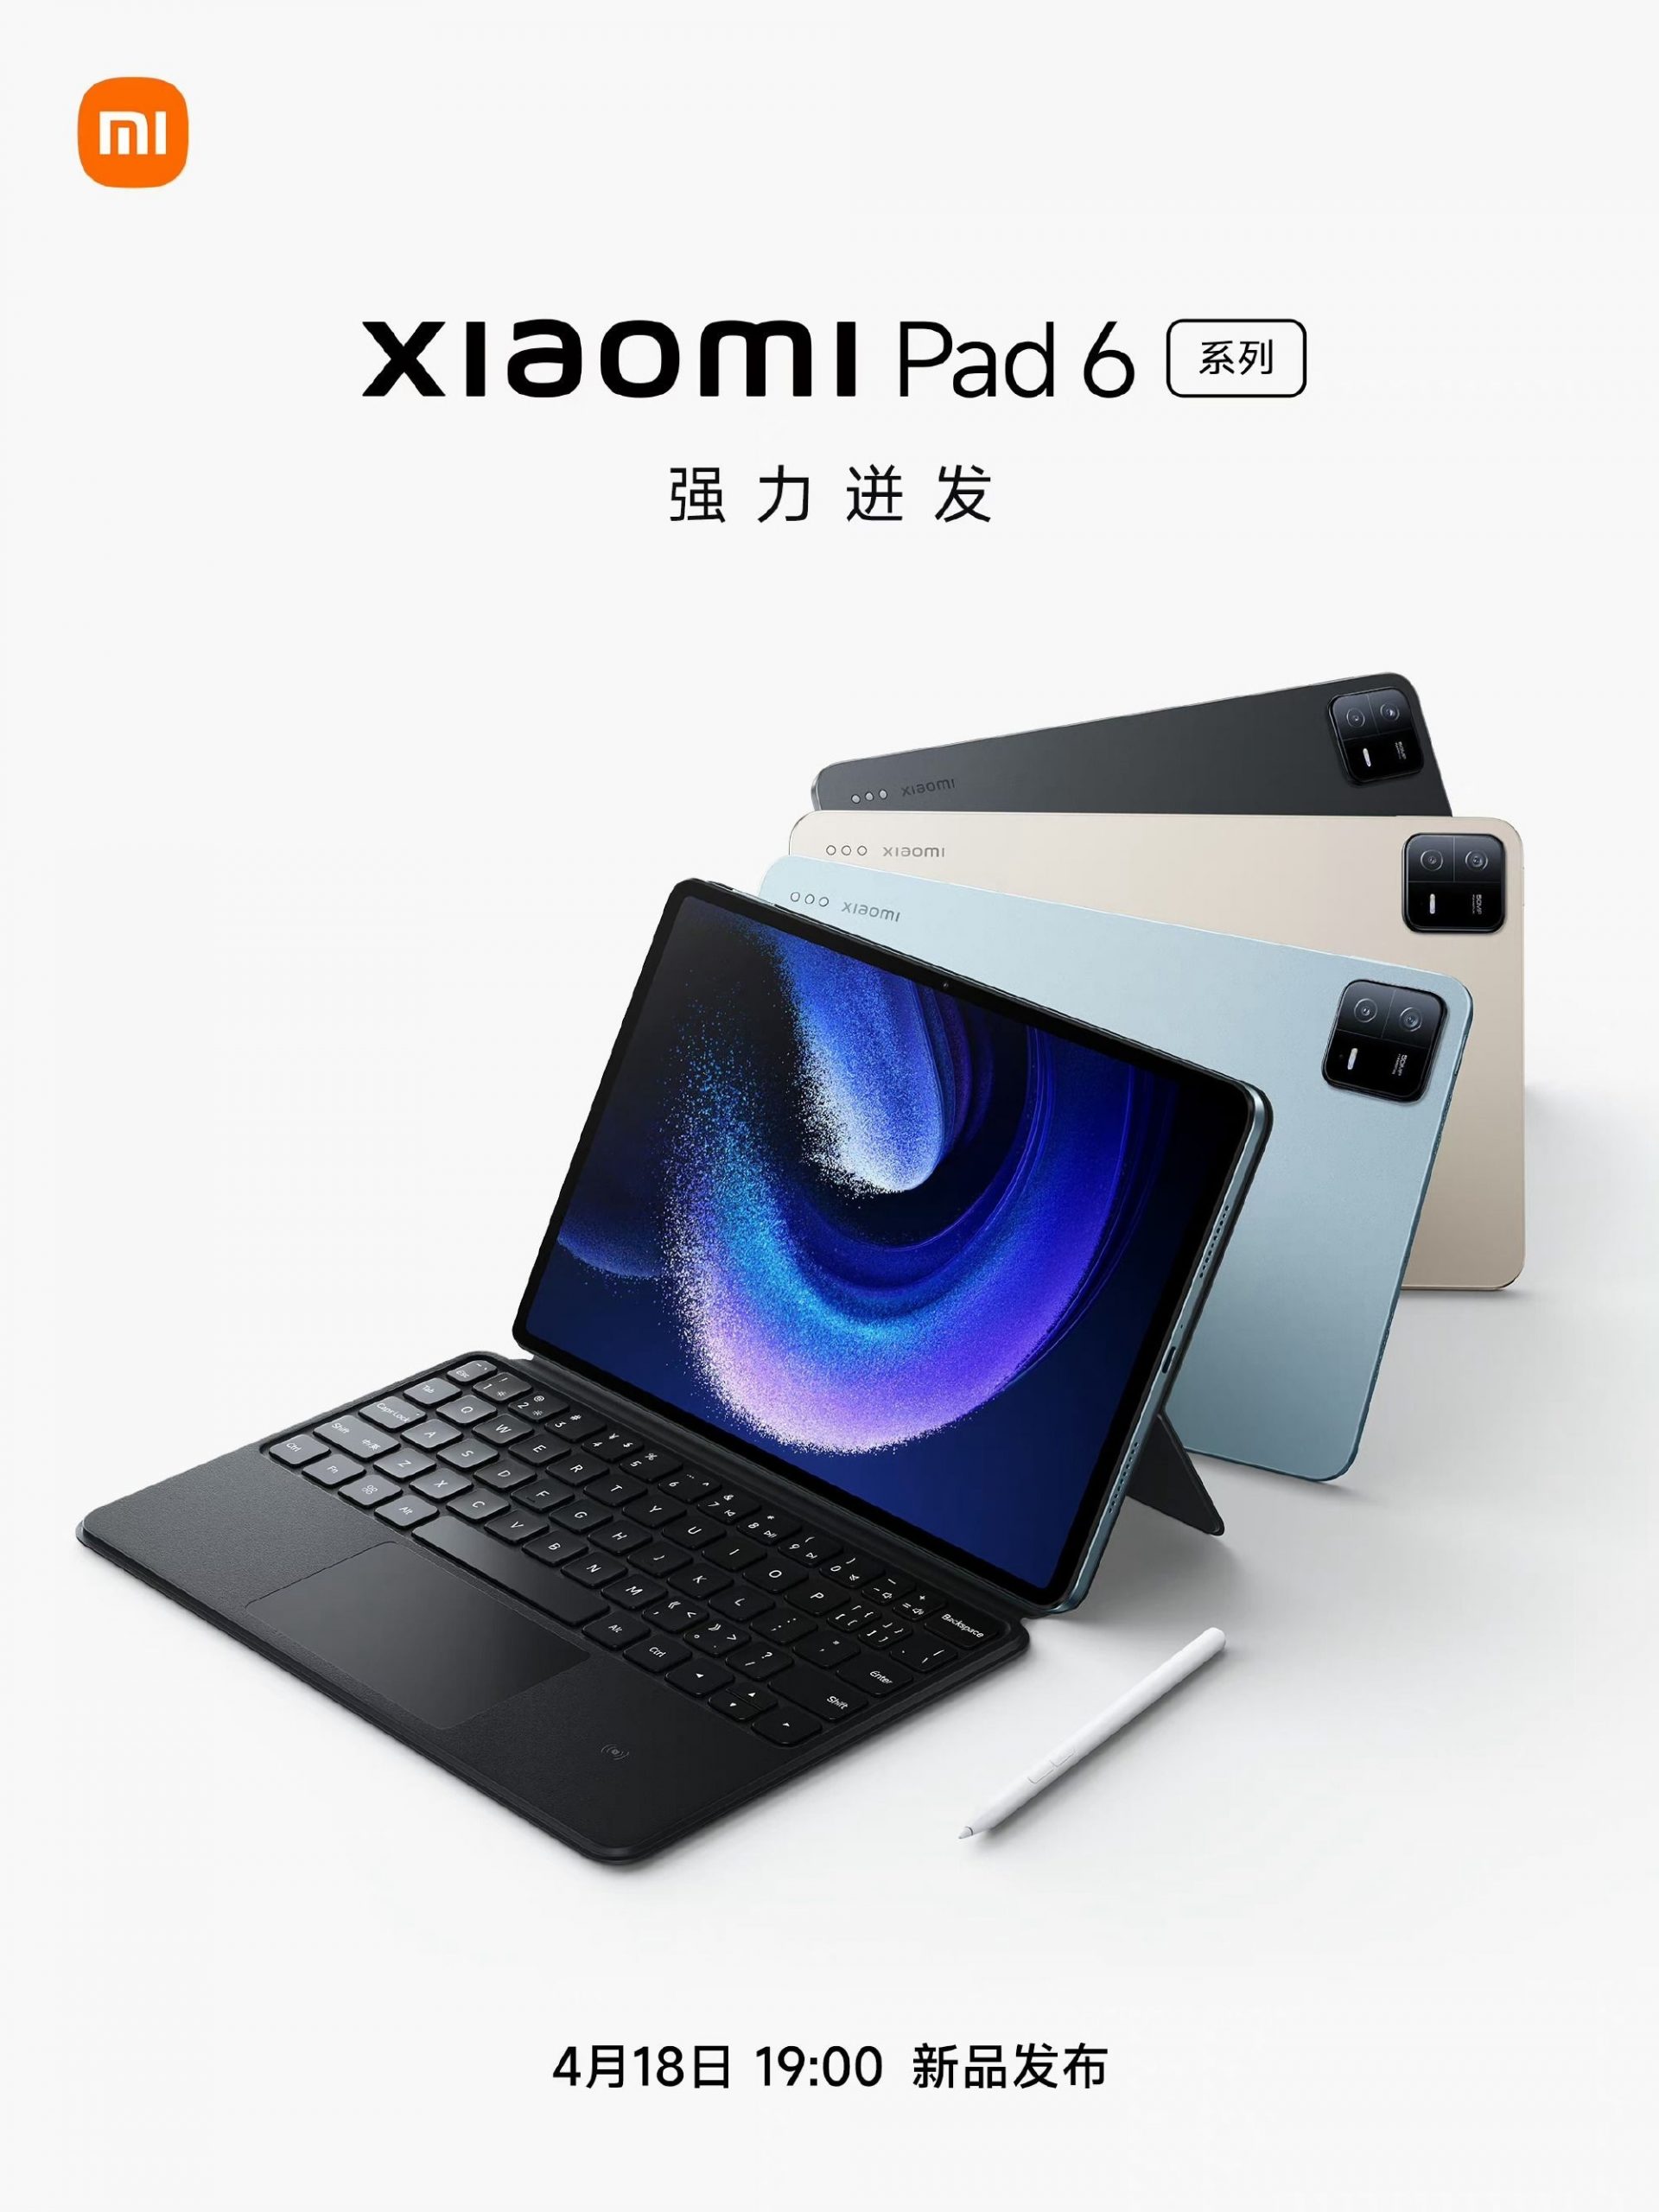 Xiaomi Pad 6 -sarjan tabletti ennakkoon julkaistussa kuvassa.